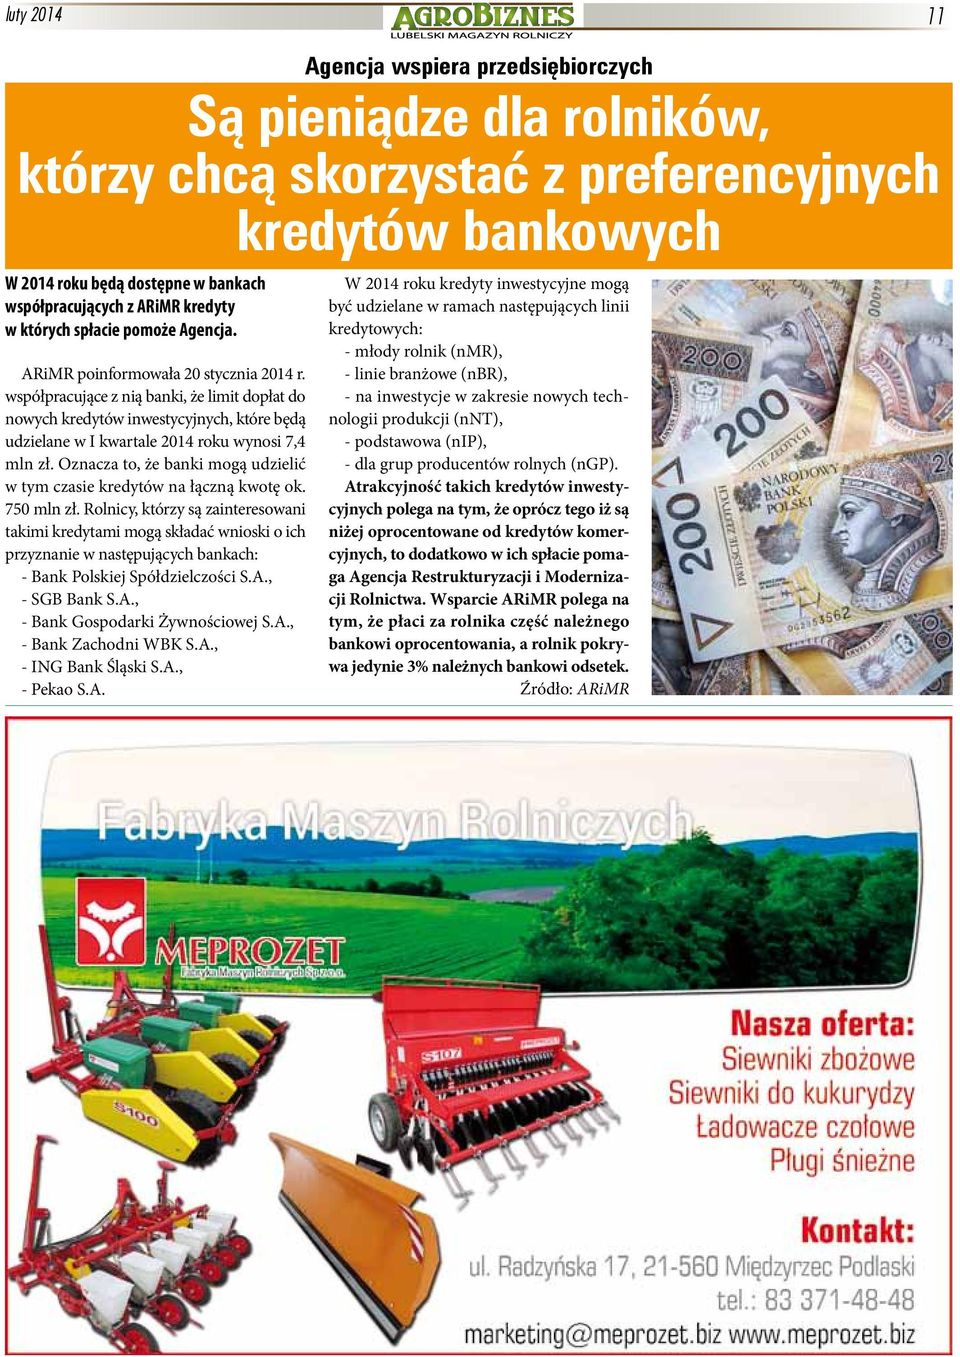 współpracujące z nią banki, że limit dopłat do nowych kredytów inwestycyjnych, które będą udzielane w I kwartale 2014 roku wynosi 7,4 mln zł.